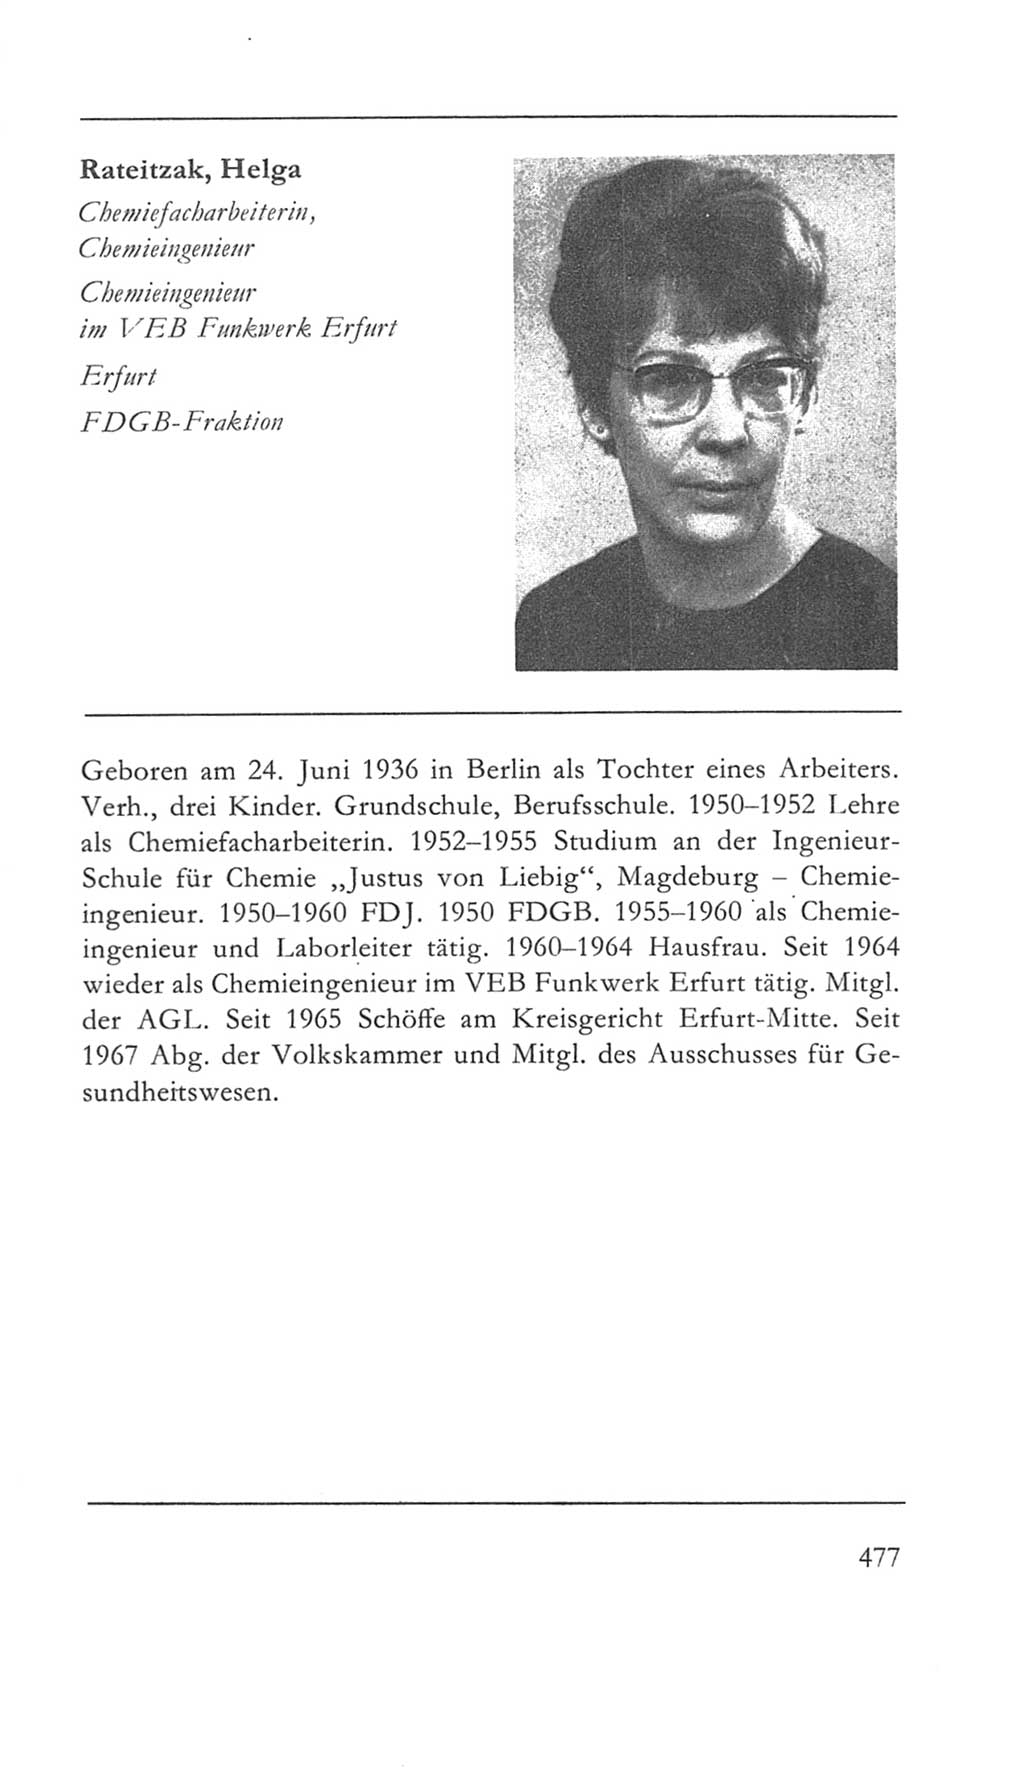 Volkskammer (VK) der Deutschen Demokratischen Republik (DDR) 5. Wahlperiode 1967-1971, Seite 477 (VK. DDR 5. WP. 1967-1971, S. 477)